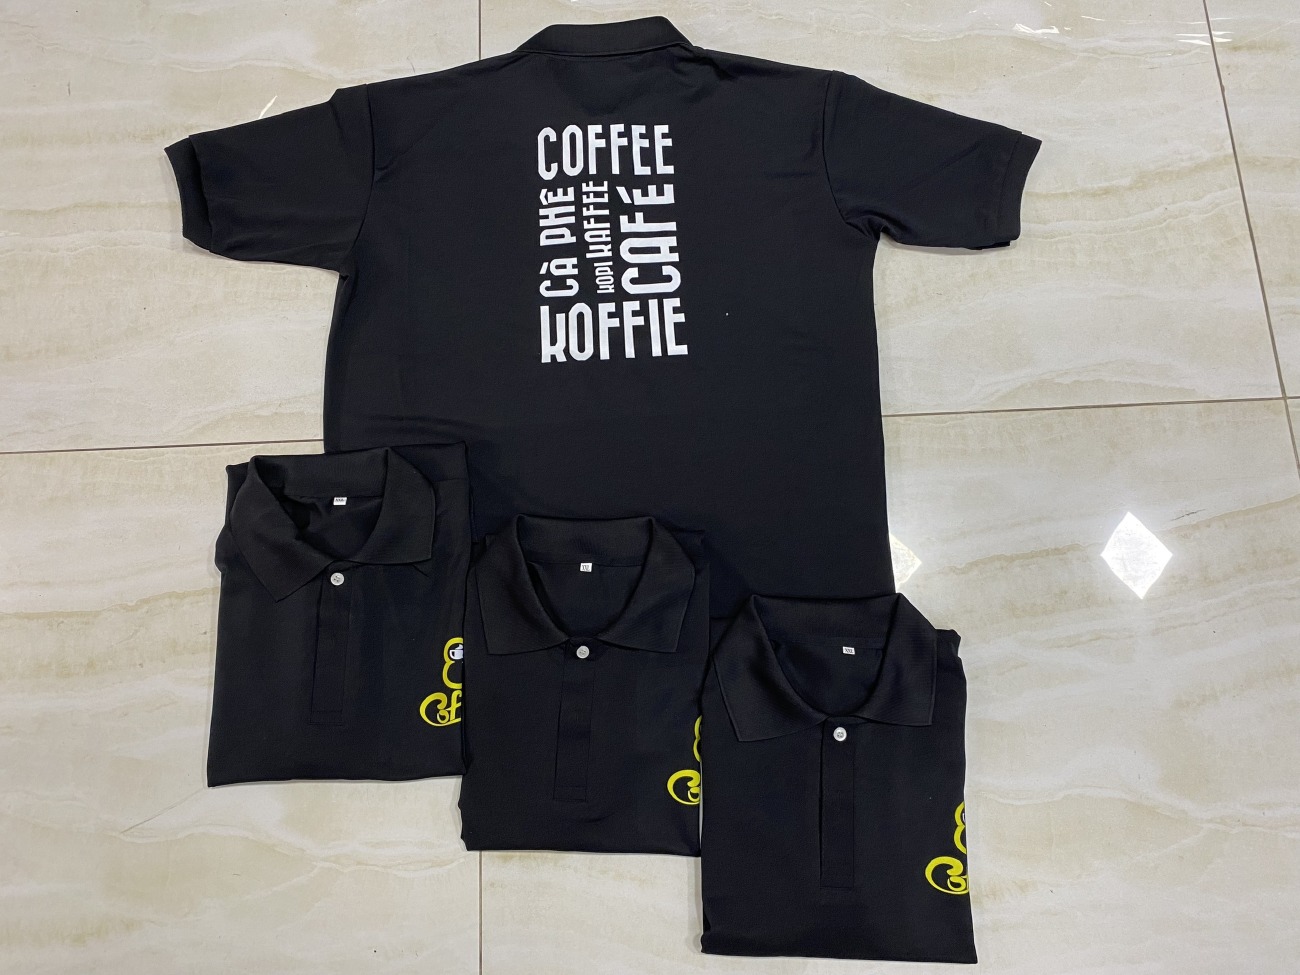 Áo đồng phục quán cà phê, đồng phục cafe đẹp, may áo đồng phục cà phê giá rẻ